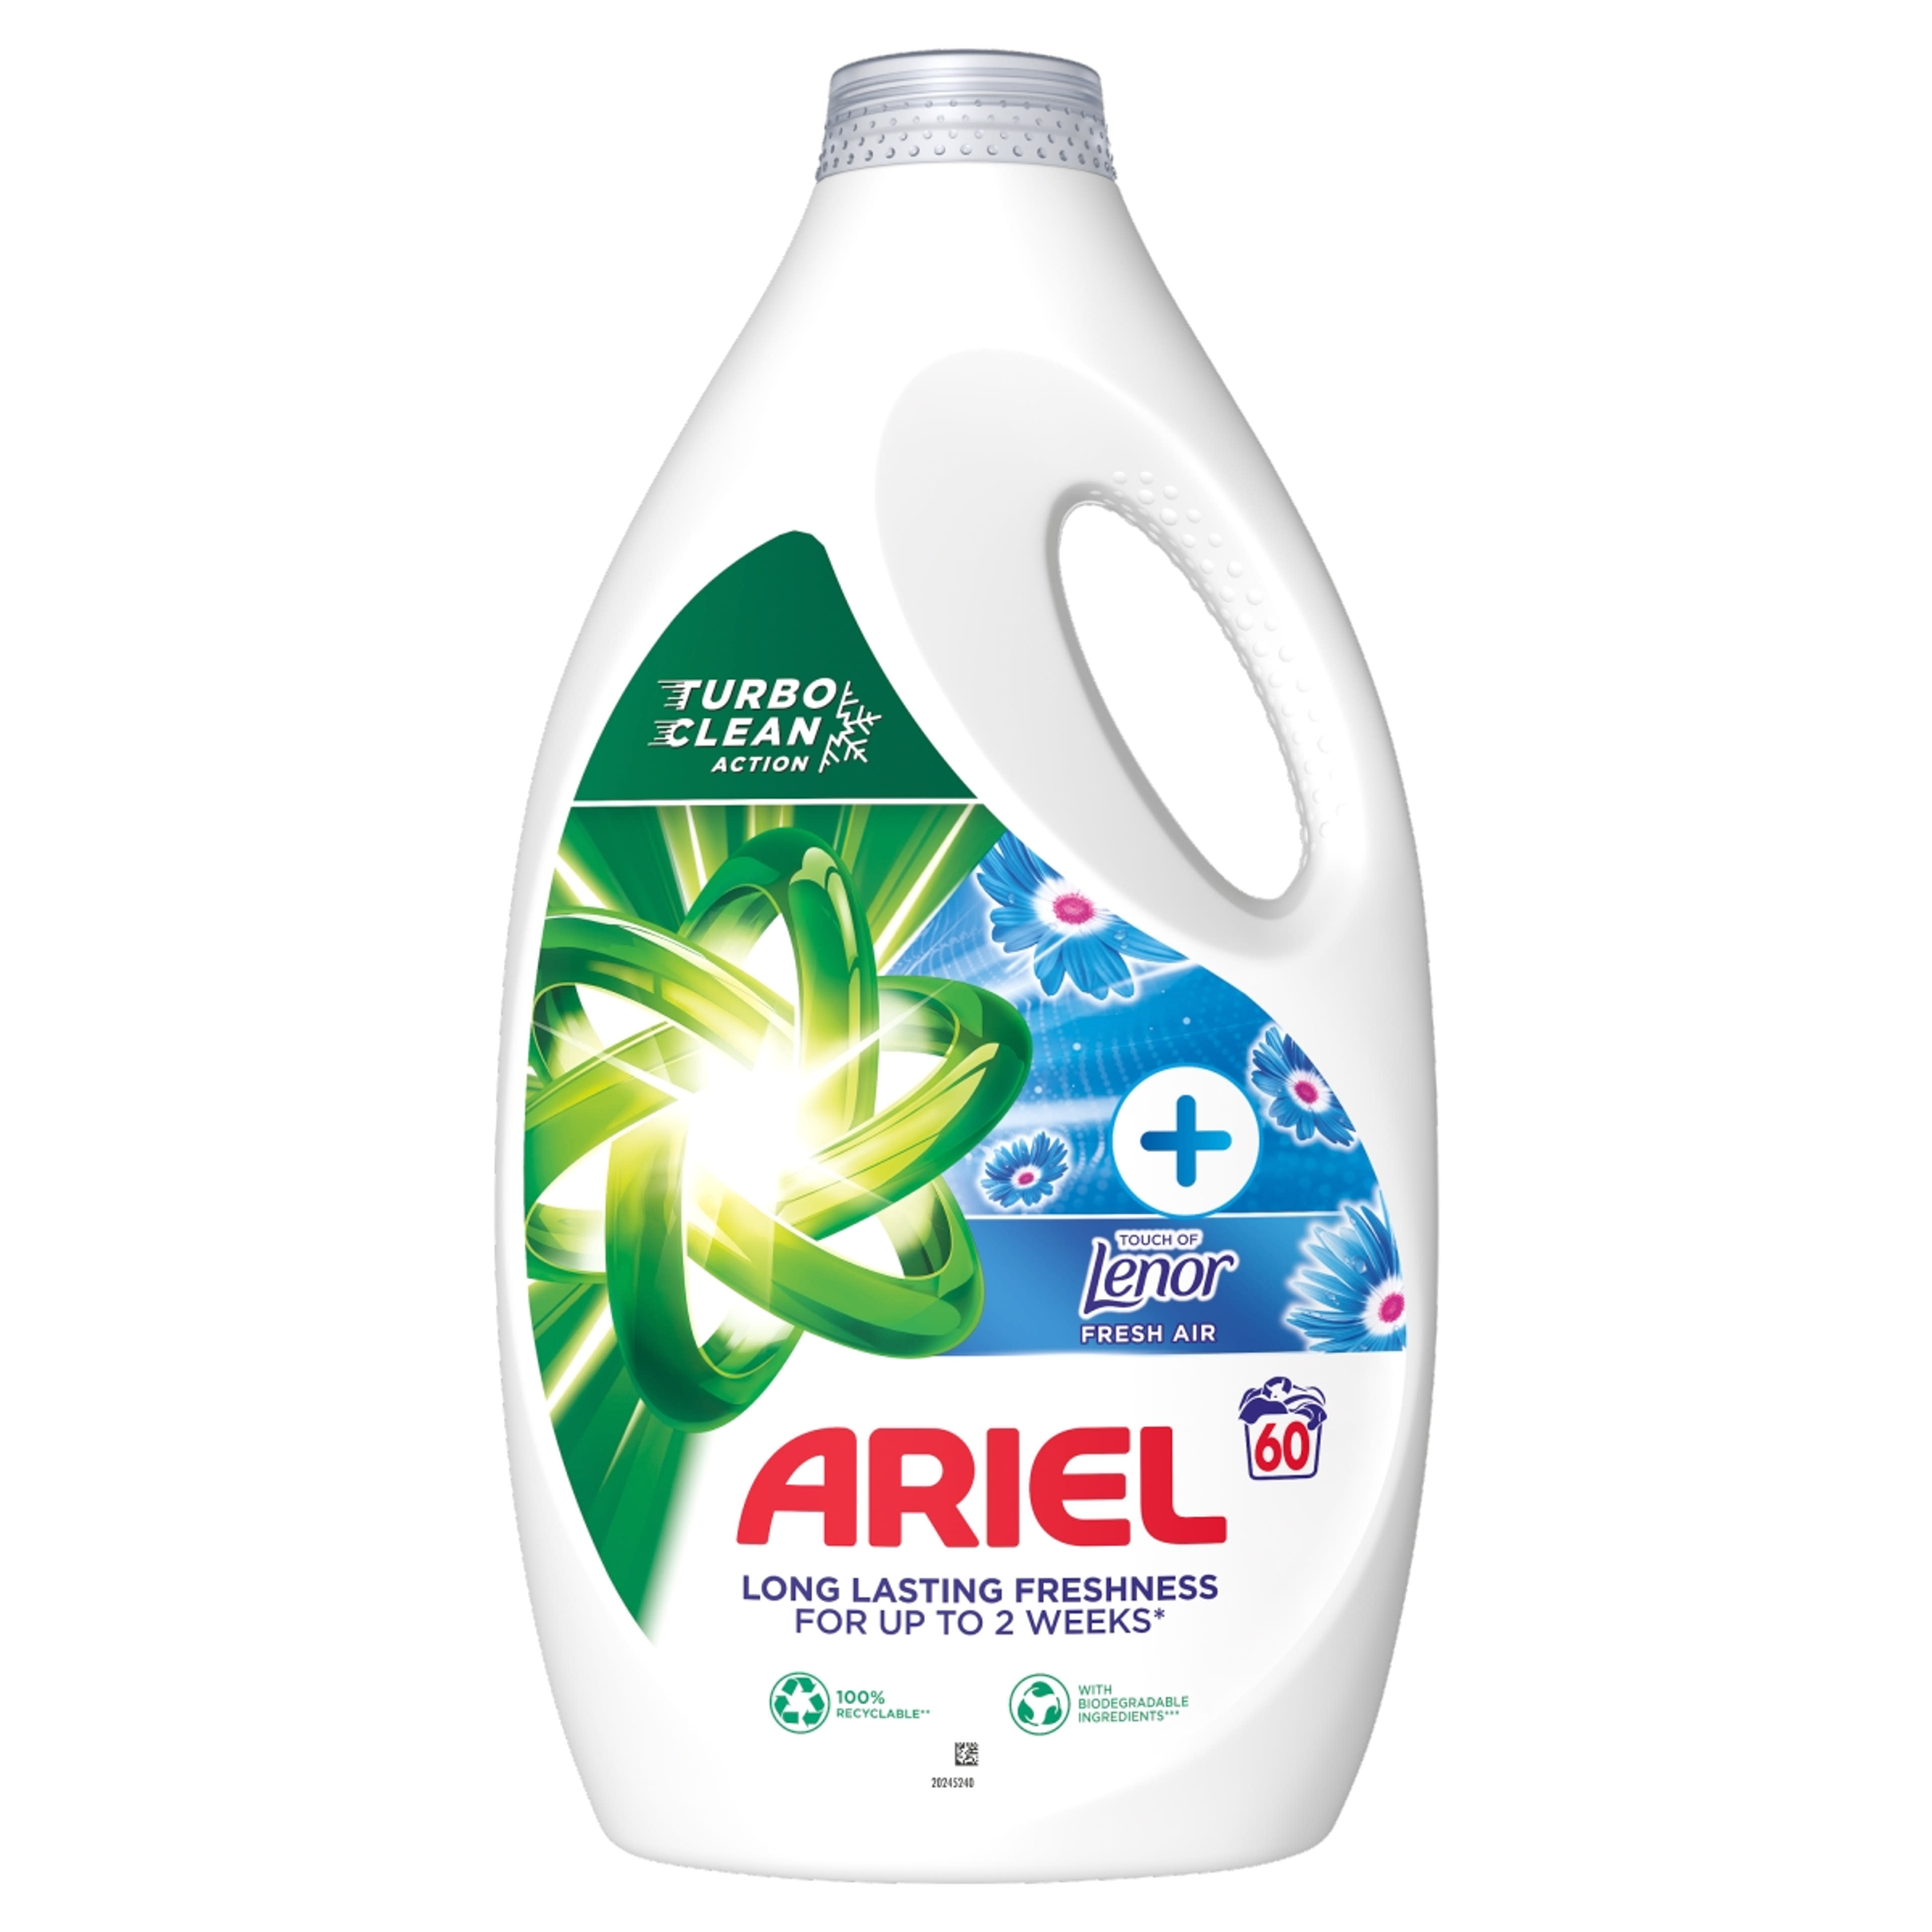 Ariel Fresh Air folyékony mosószer 60 mosáshoz - 3000 ml